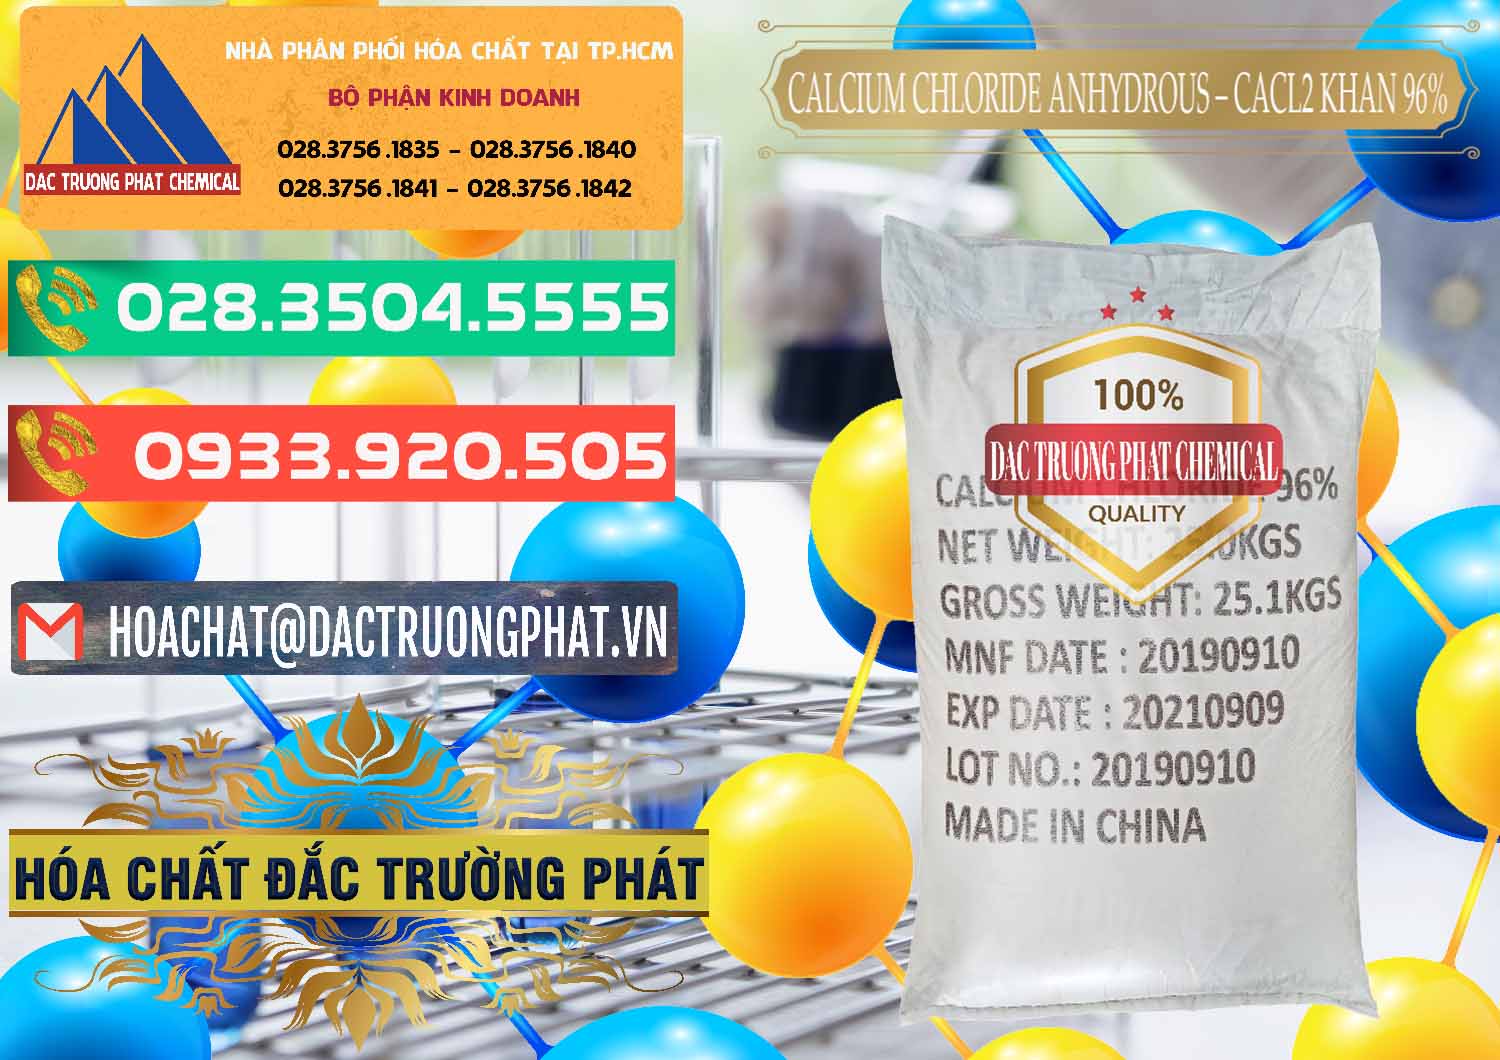 Nơi chuyên bán _ phân phối CaCl2 – Canxi Clorua Anhydrous Khan 96% Trung Quốc China - 0043 - Phân phối & cung ứng hóa chất tại TP.HCM - congtyhoachat.com.vn